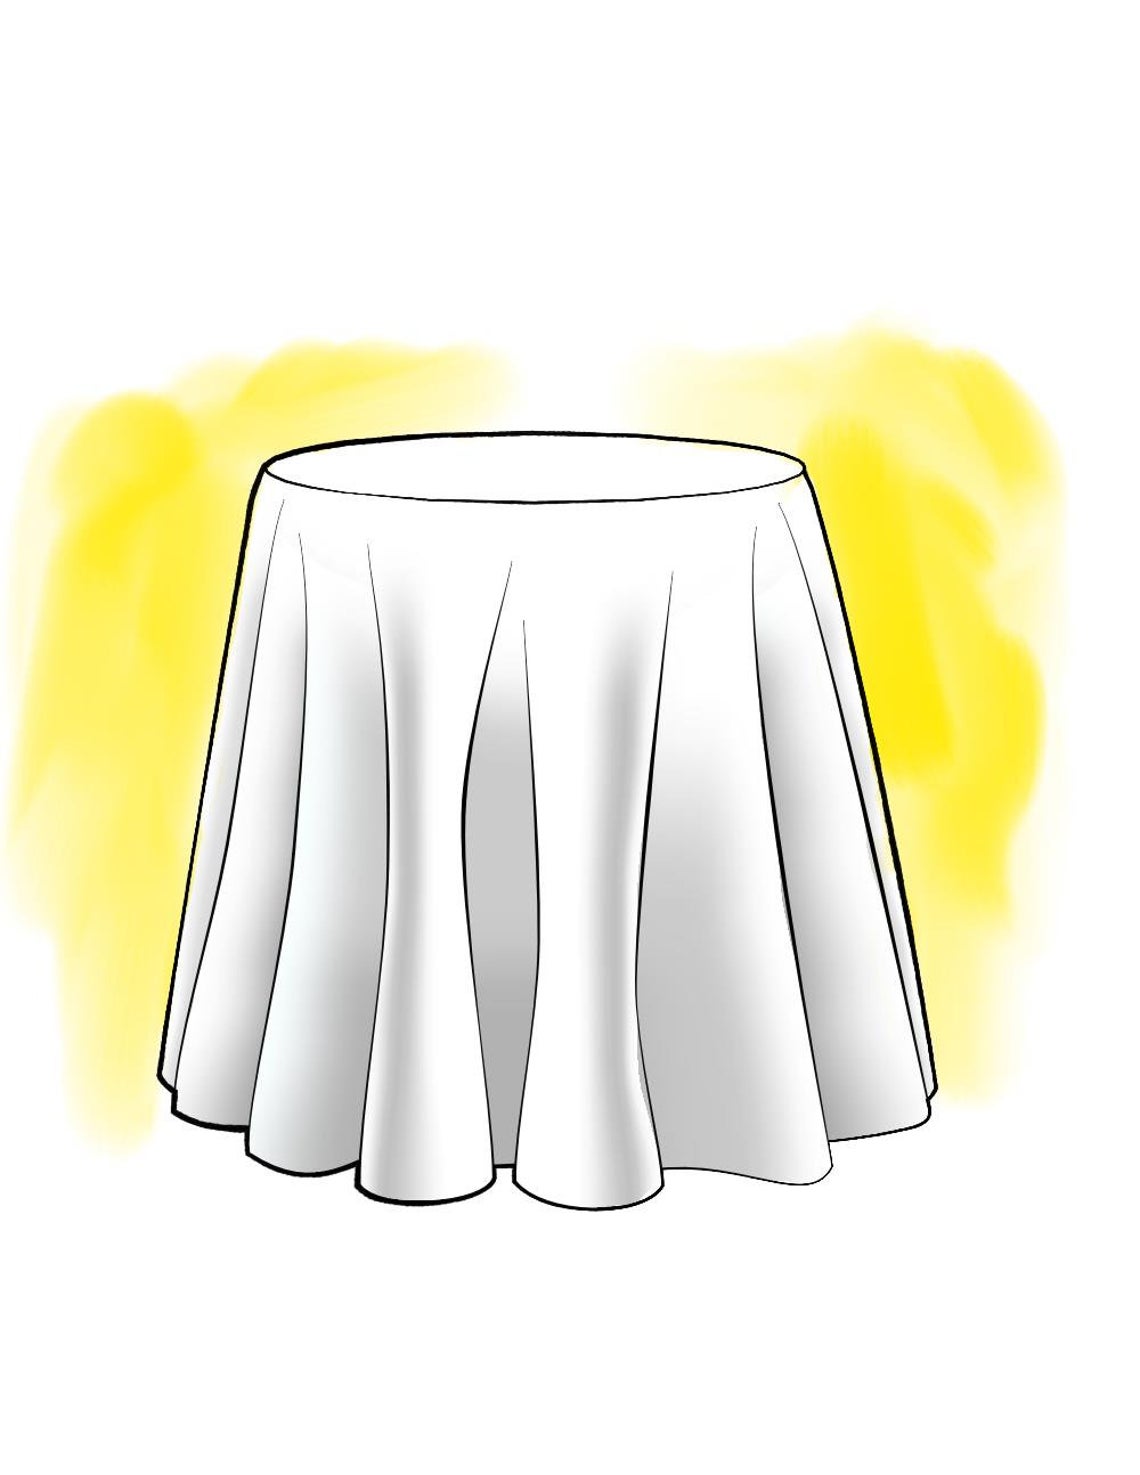 round tablecloth in anderson monarch orange buffalo check plaid